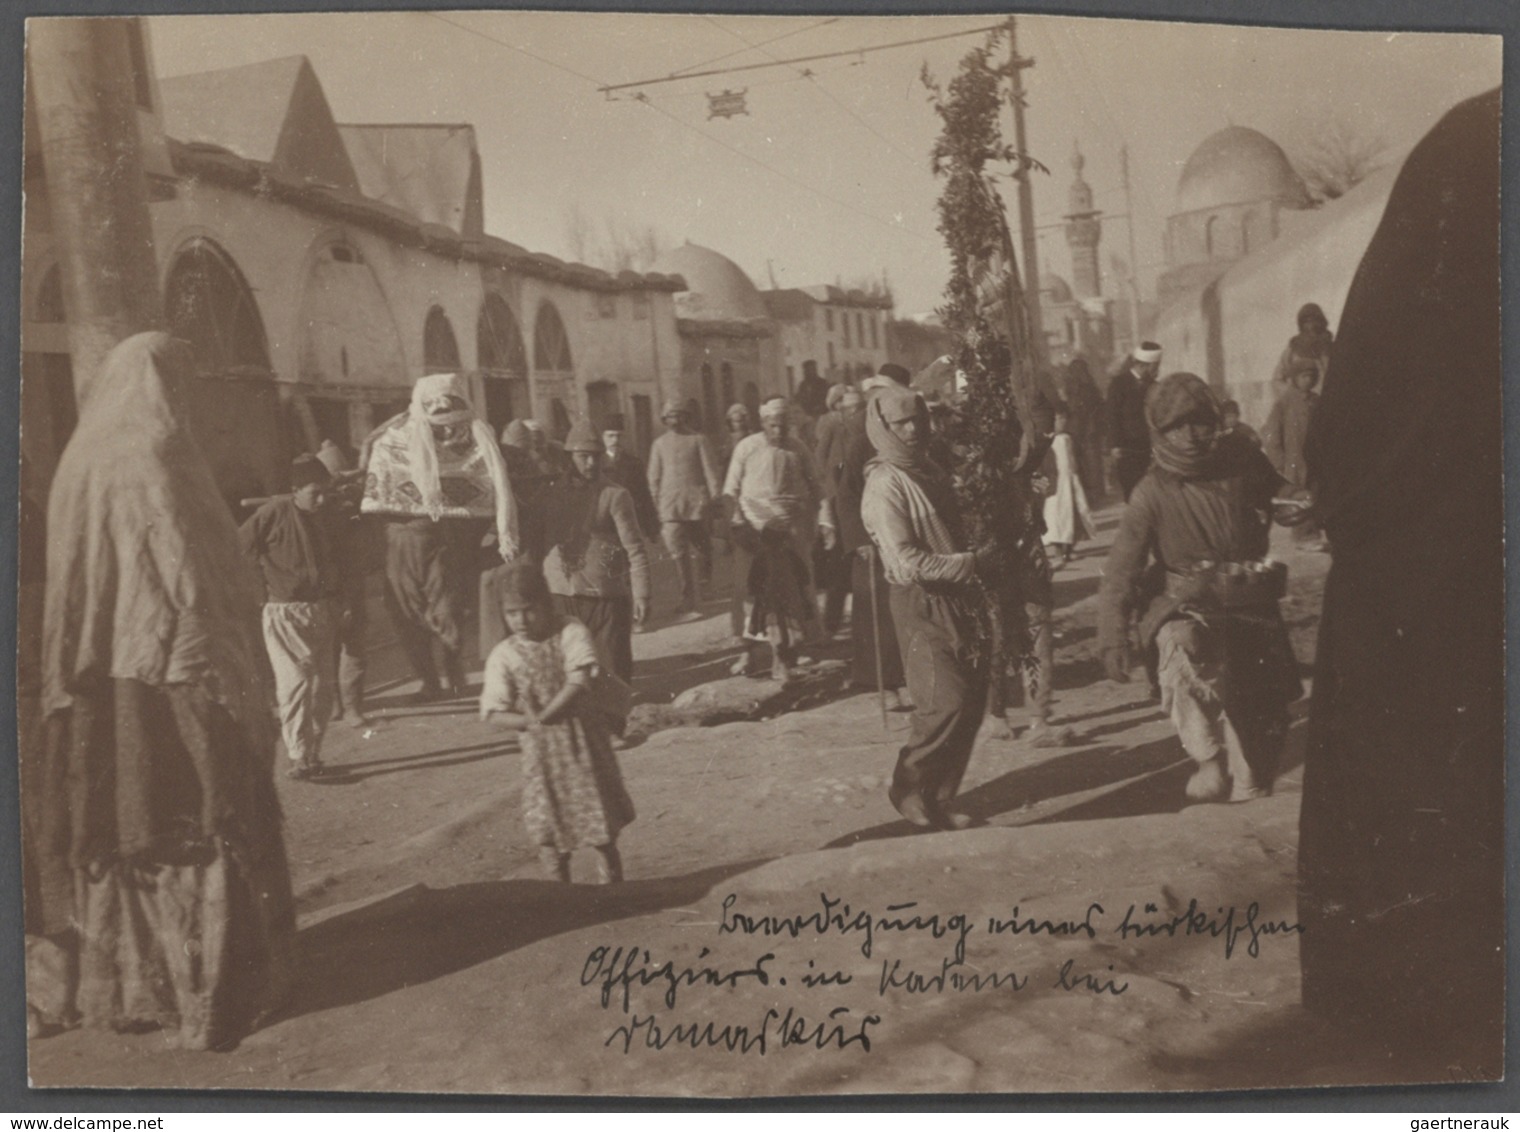 Türkei - Besonderheiten: 1917/1918: Fotosammlung eines deutschen Soldaten der Armme Fernsprechabteil